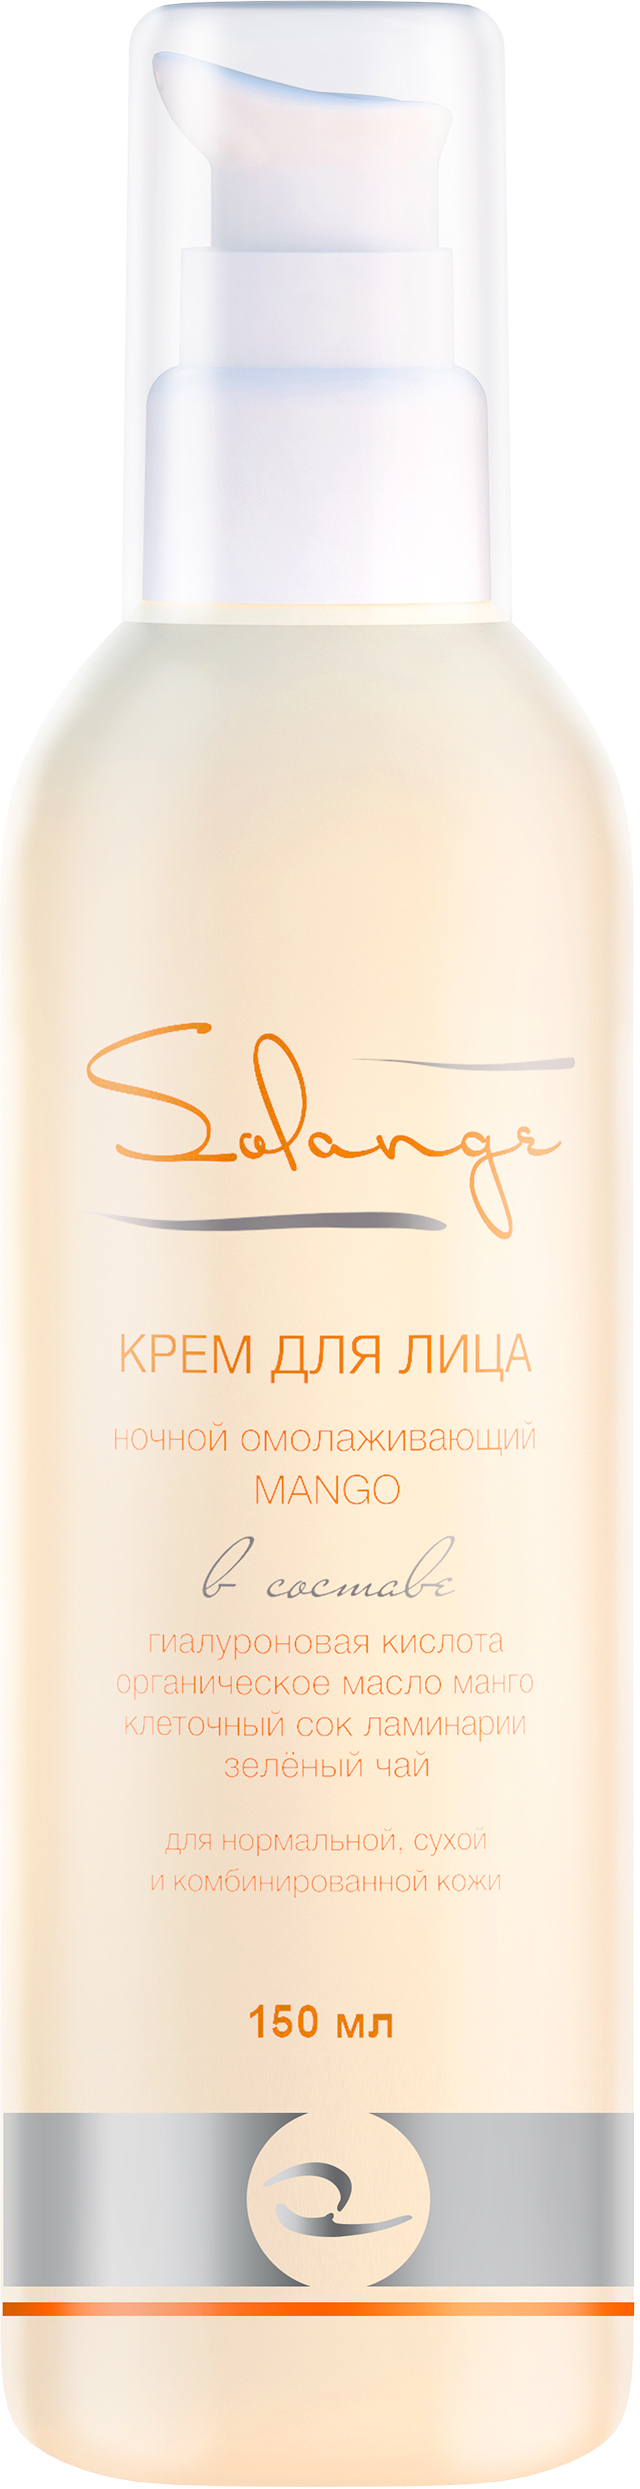 купить Solange Ночной омолаживающий крем, 150 мл - заказ и доставка в Москве и Санкт-Петербурге